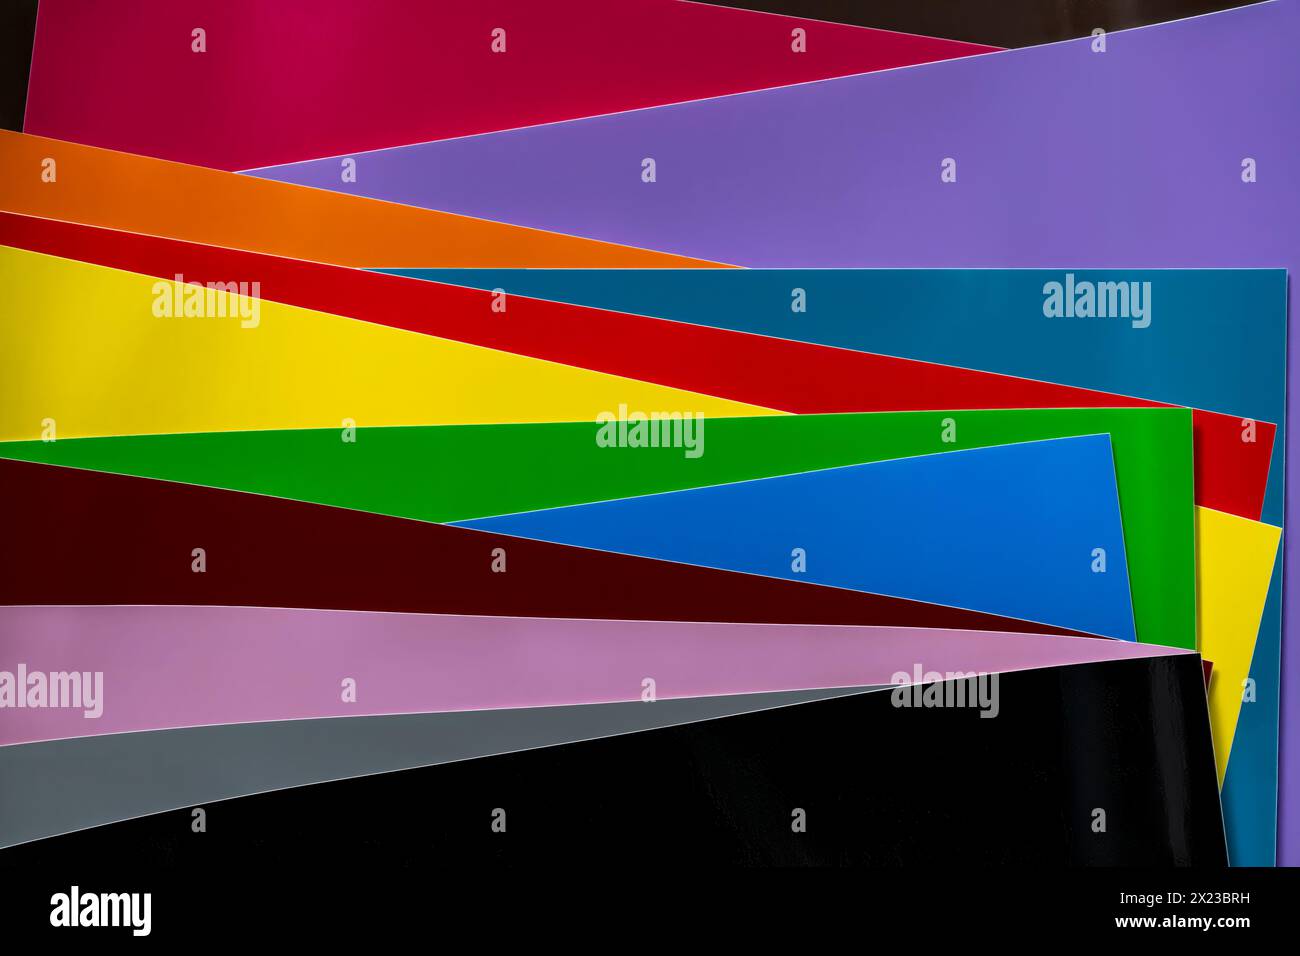 Farbenfrohe Schichten aus verschiedenfarbigen Vinylfolien, die interessante geometrische Formen ergeben Stockfoto